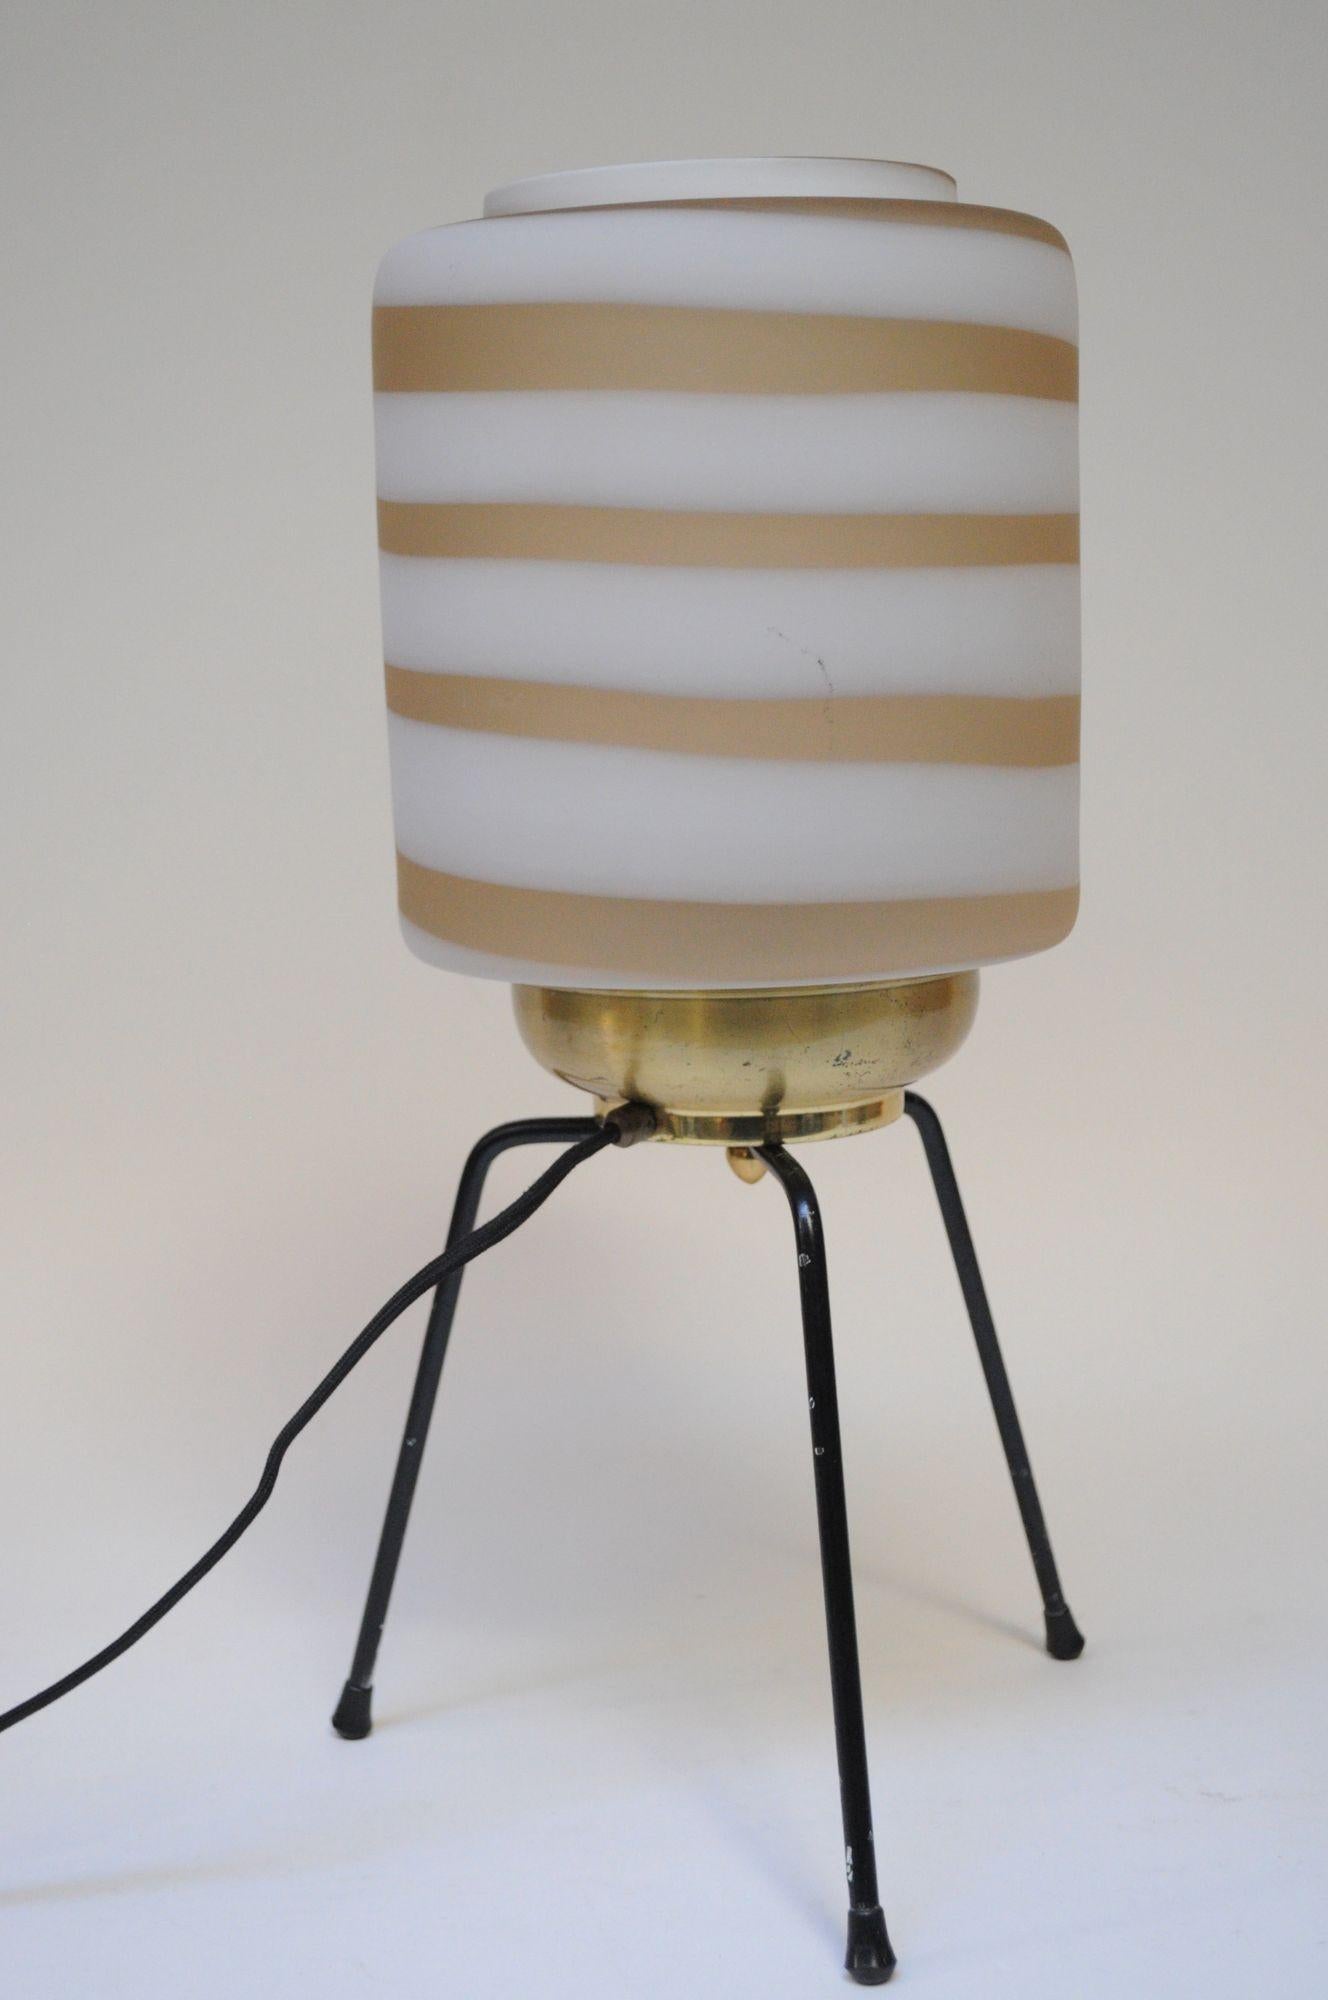 Beeindruckende Tischleuchte, bestehend aus einem dreibeinigen Sockel aus Gummi/Kunststoff, der eine Messinghalterung mit einem Schirm aus Murano-Glas trägt (ca. 1950er Jahre, Italien).
Der matte, zylindrische Glasschirm ist ein Wirbel aus